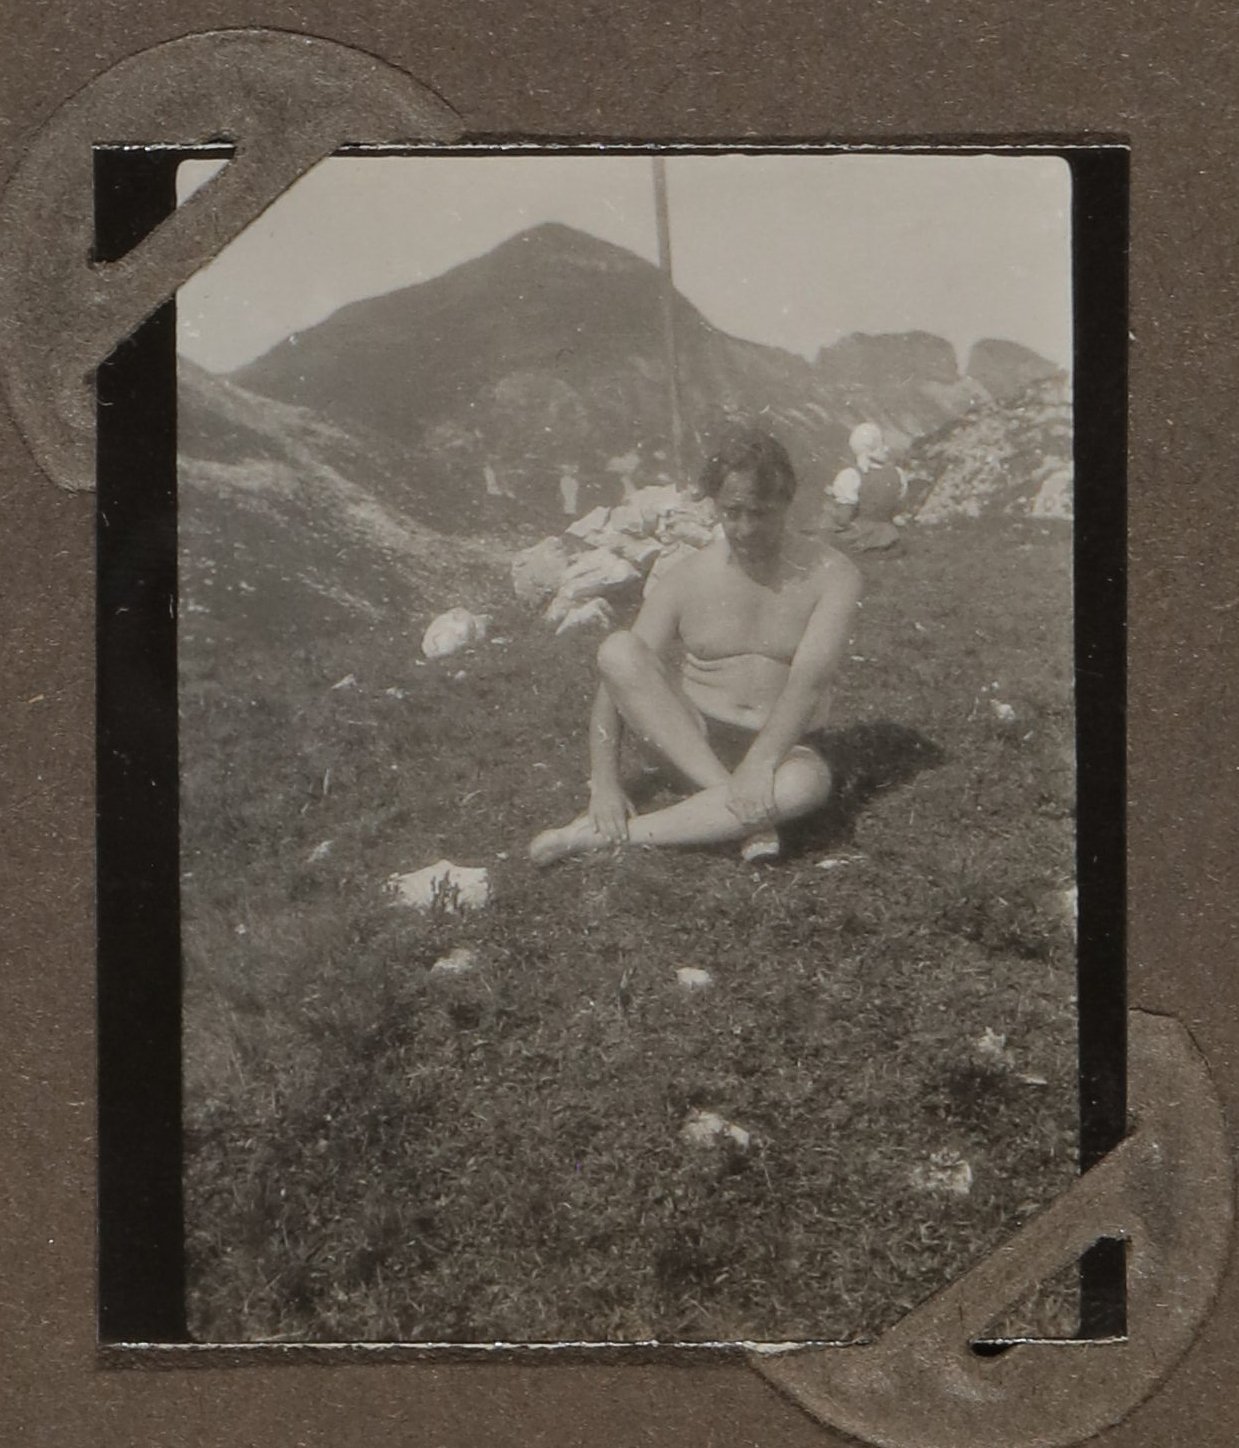 Heinrich Zimmer in Badehose auf einer Wiese vor Bergen sitzend (Vera Graaf CC BY-NC-SA)